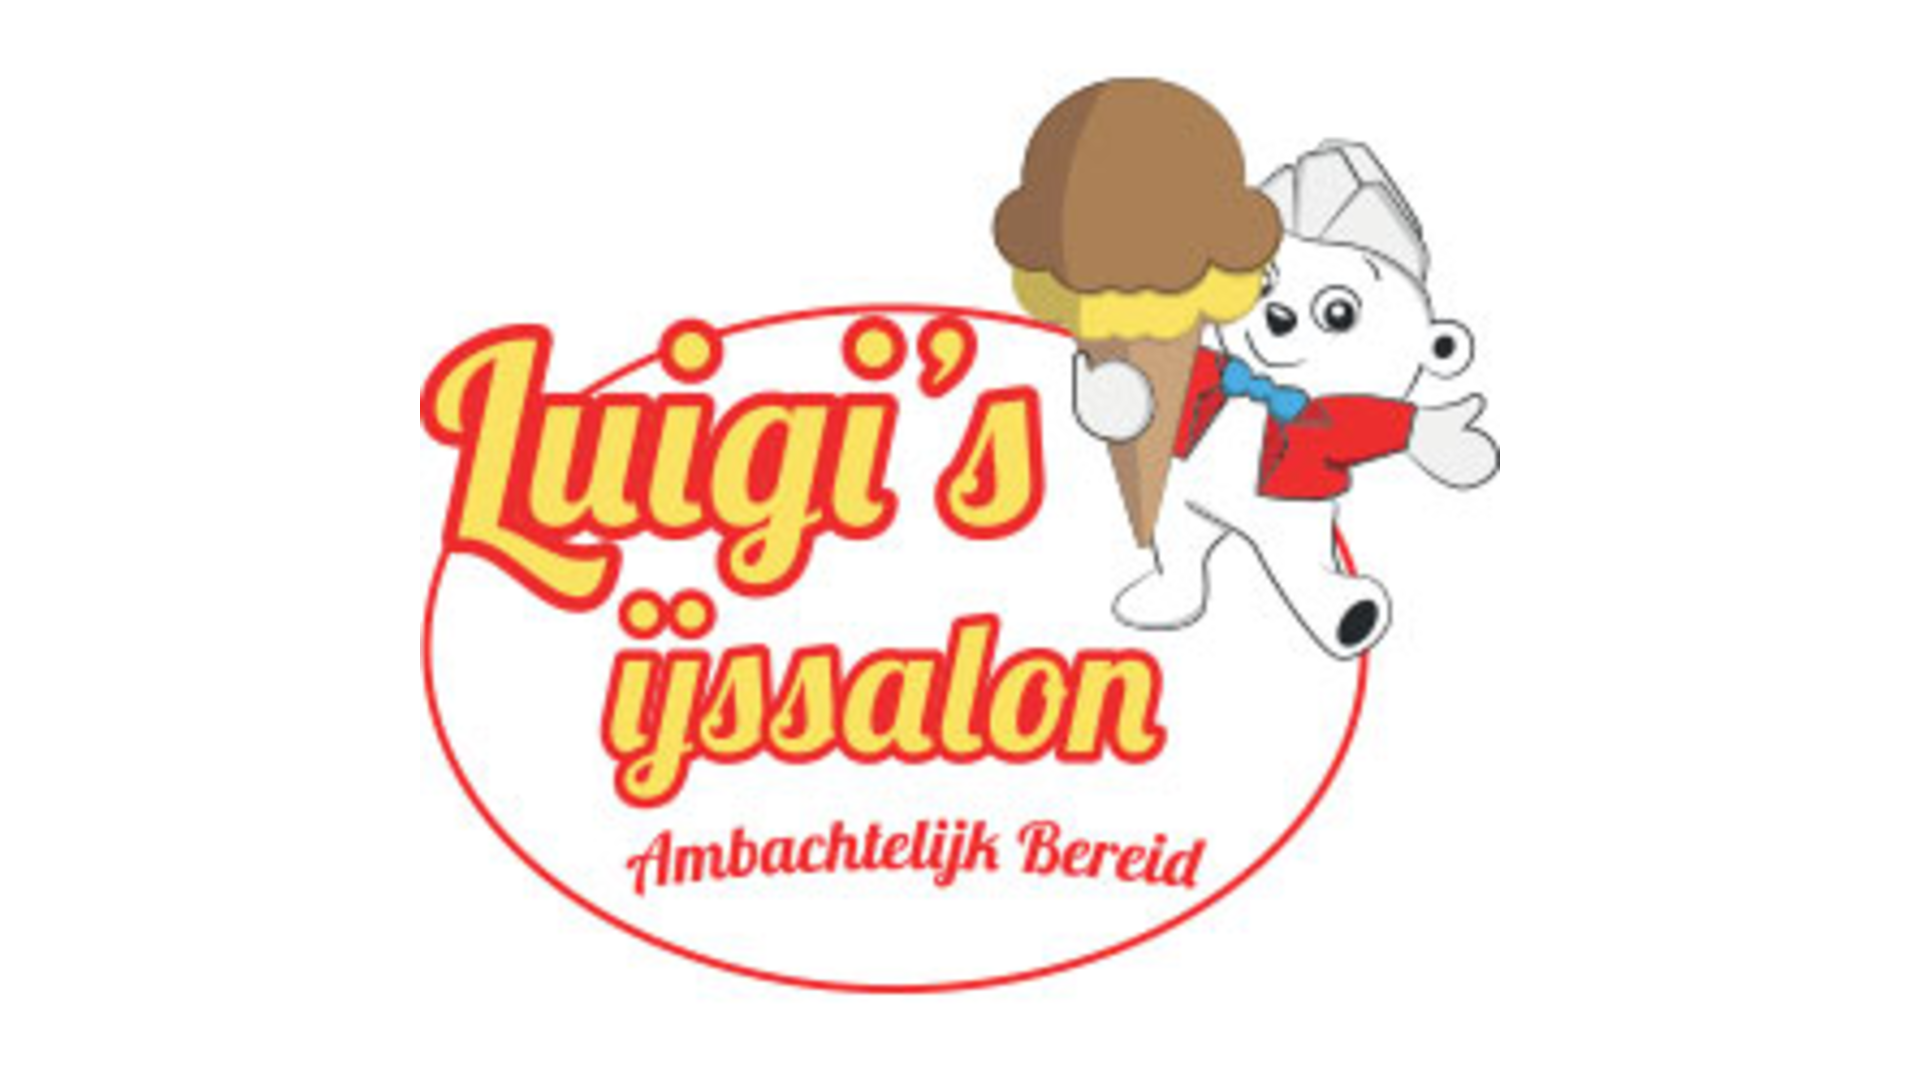 Luigi's IJssalon